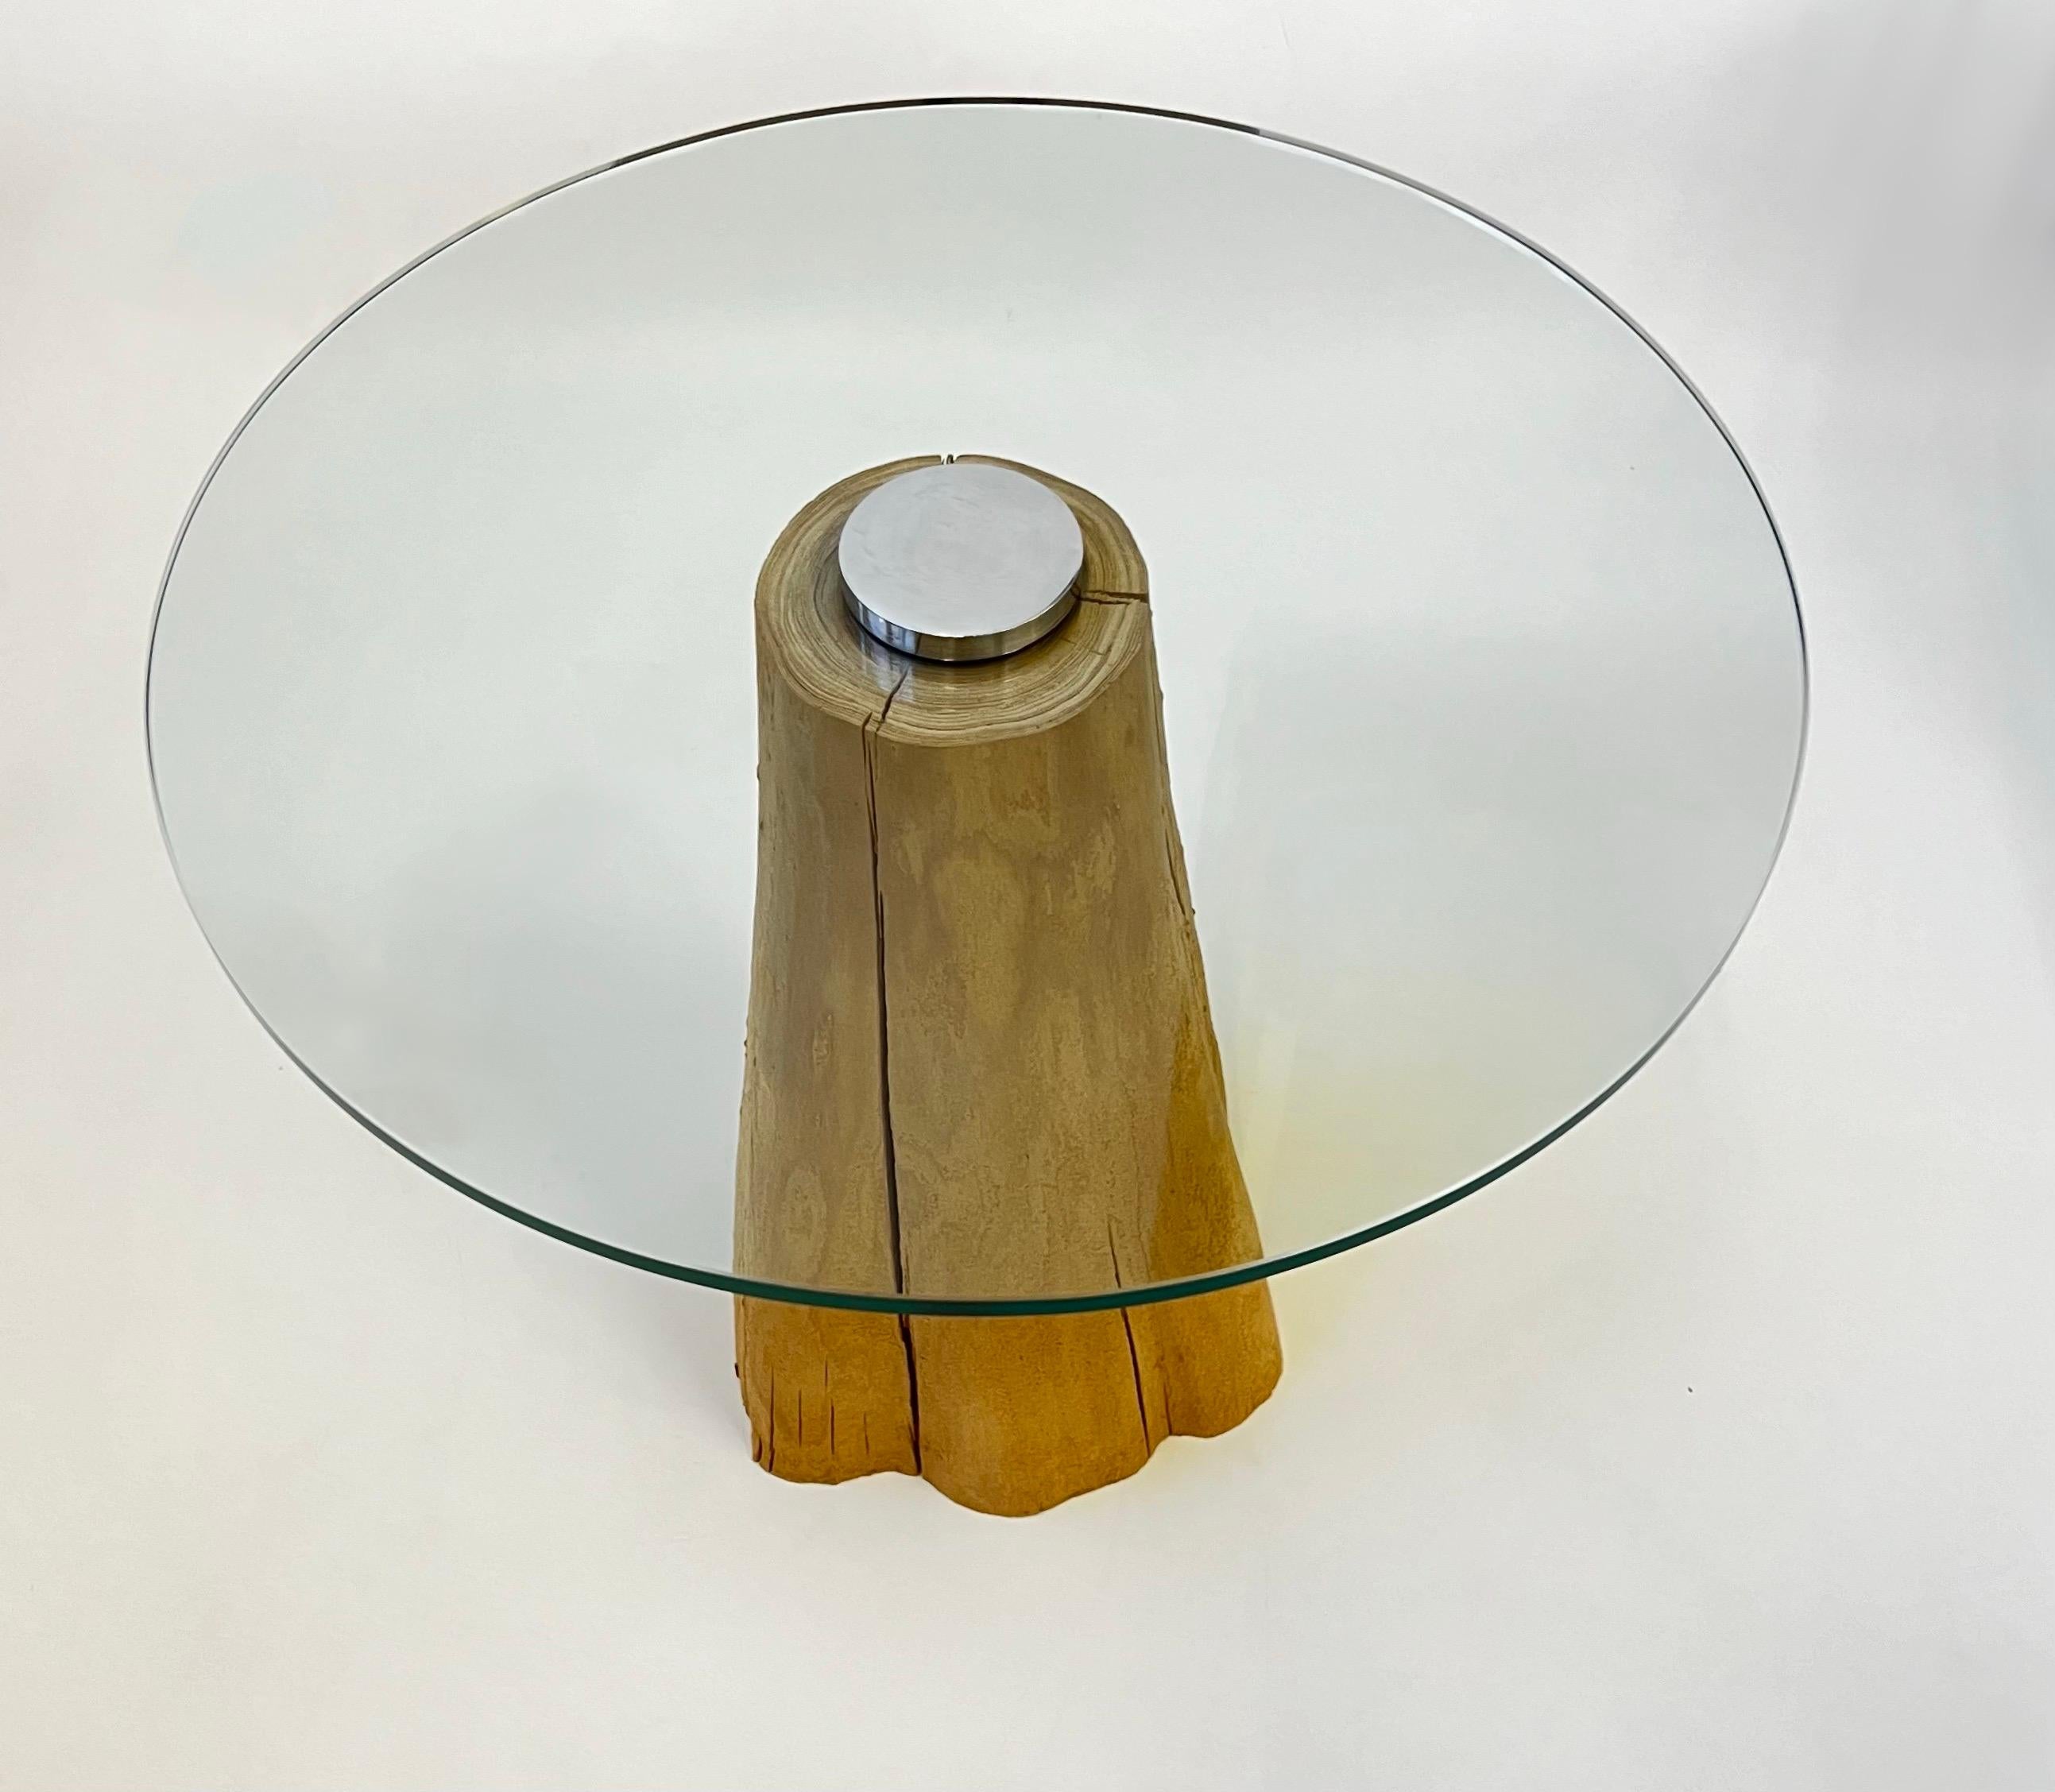 Une magnifique souche en bois des années 1970 avec une table d'appoint ronde en verre par Michael Taylor. Nouveau plateau en verre de 1/2